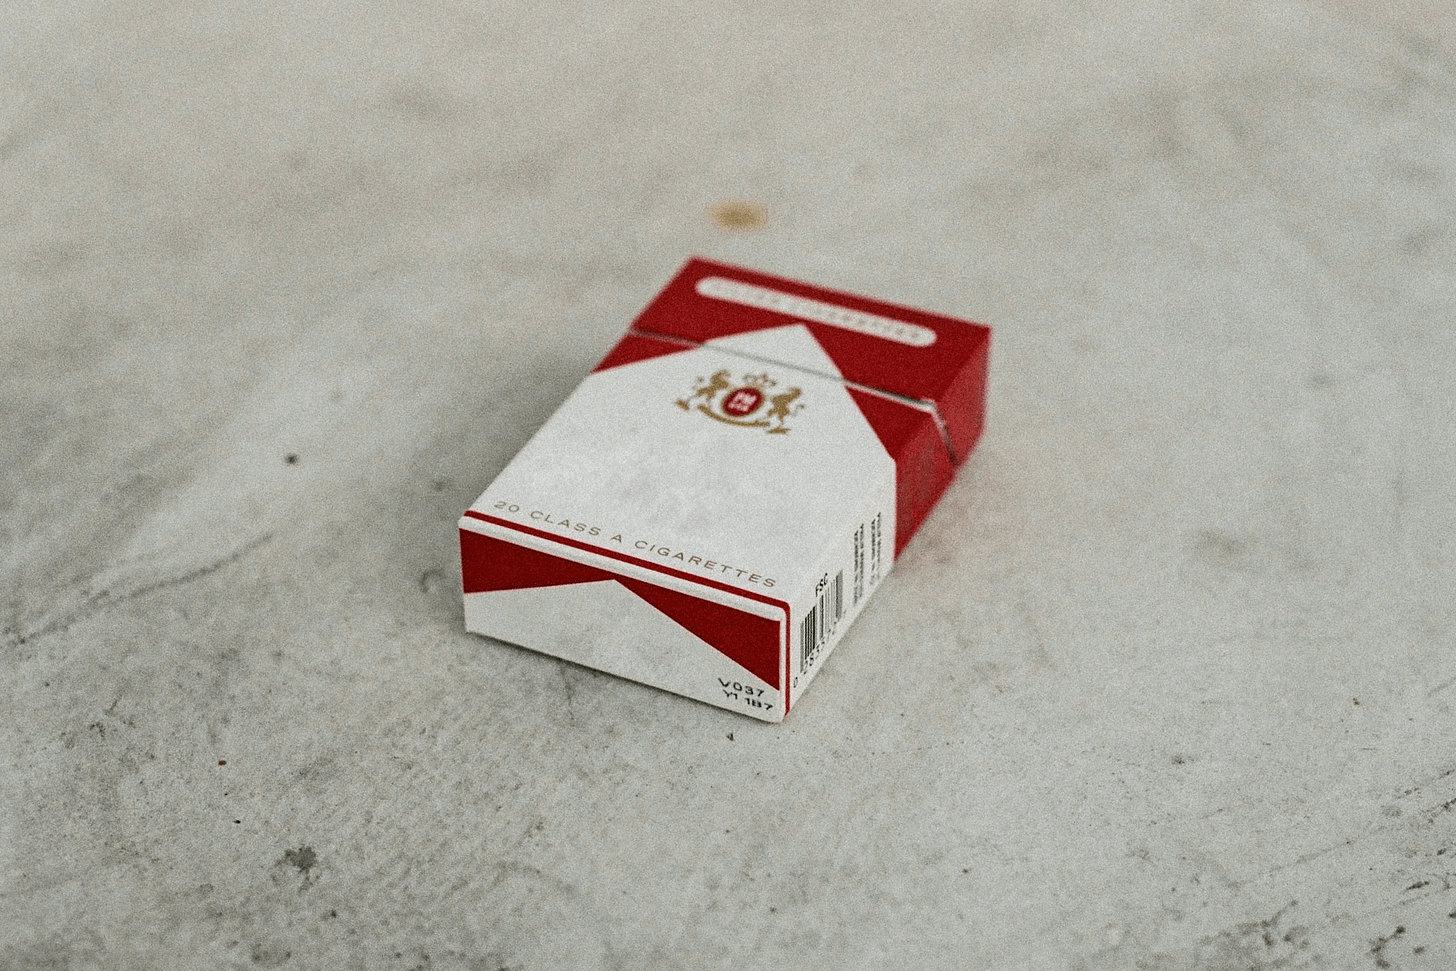 Uma caixa de cigarro branca e vermelha apoiada em um chão de cimento cinza claro.